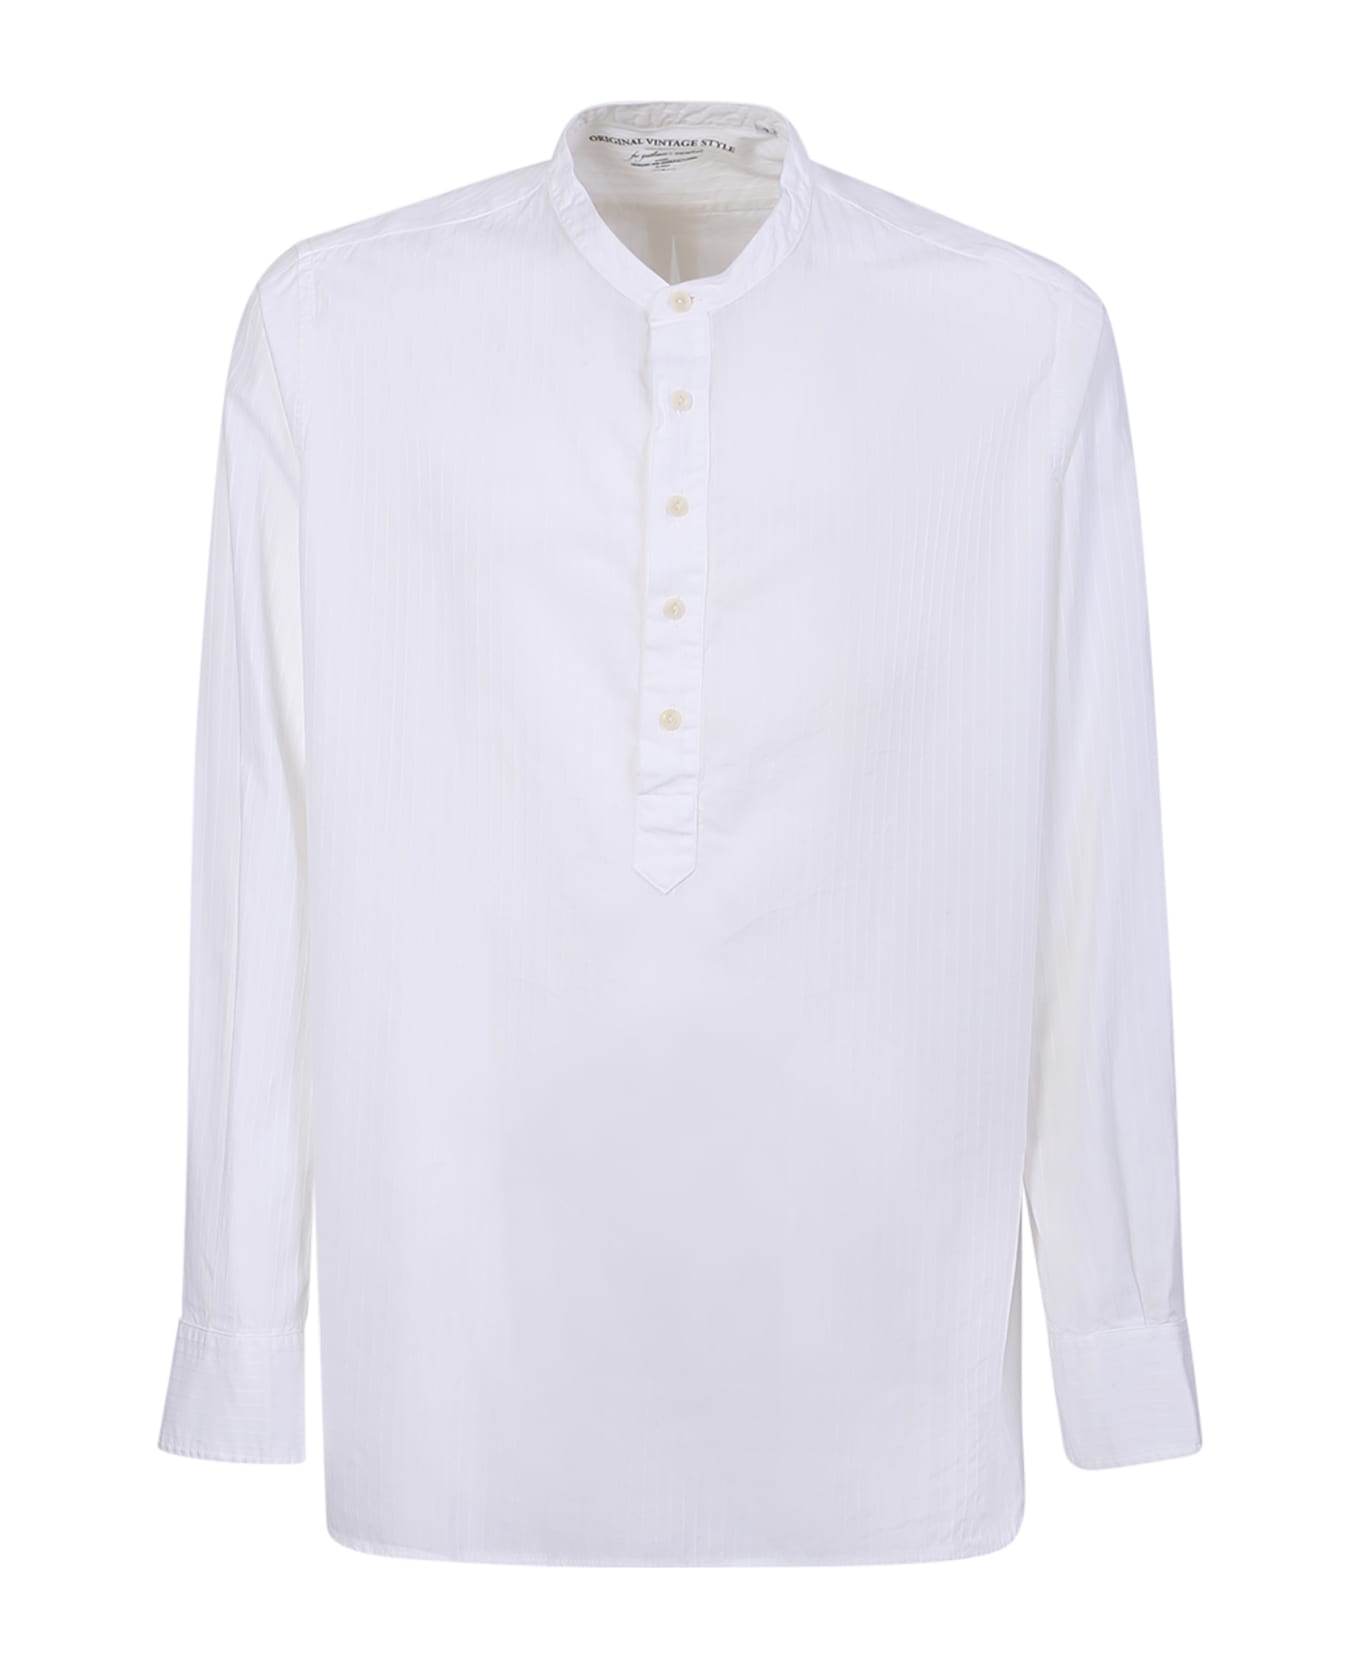 Original Vintage Style Korean Collar White Shirt - White シャツ